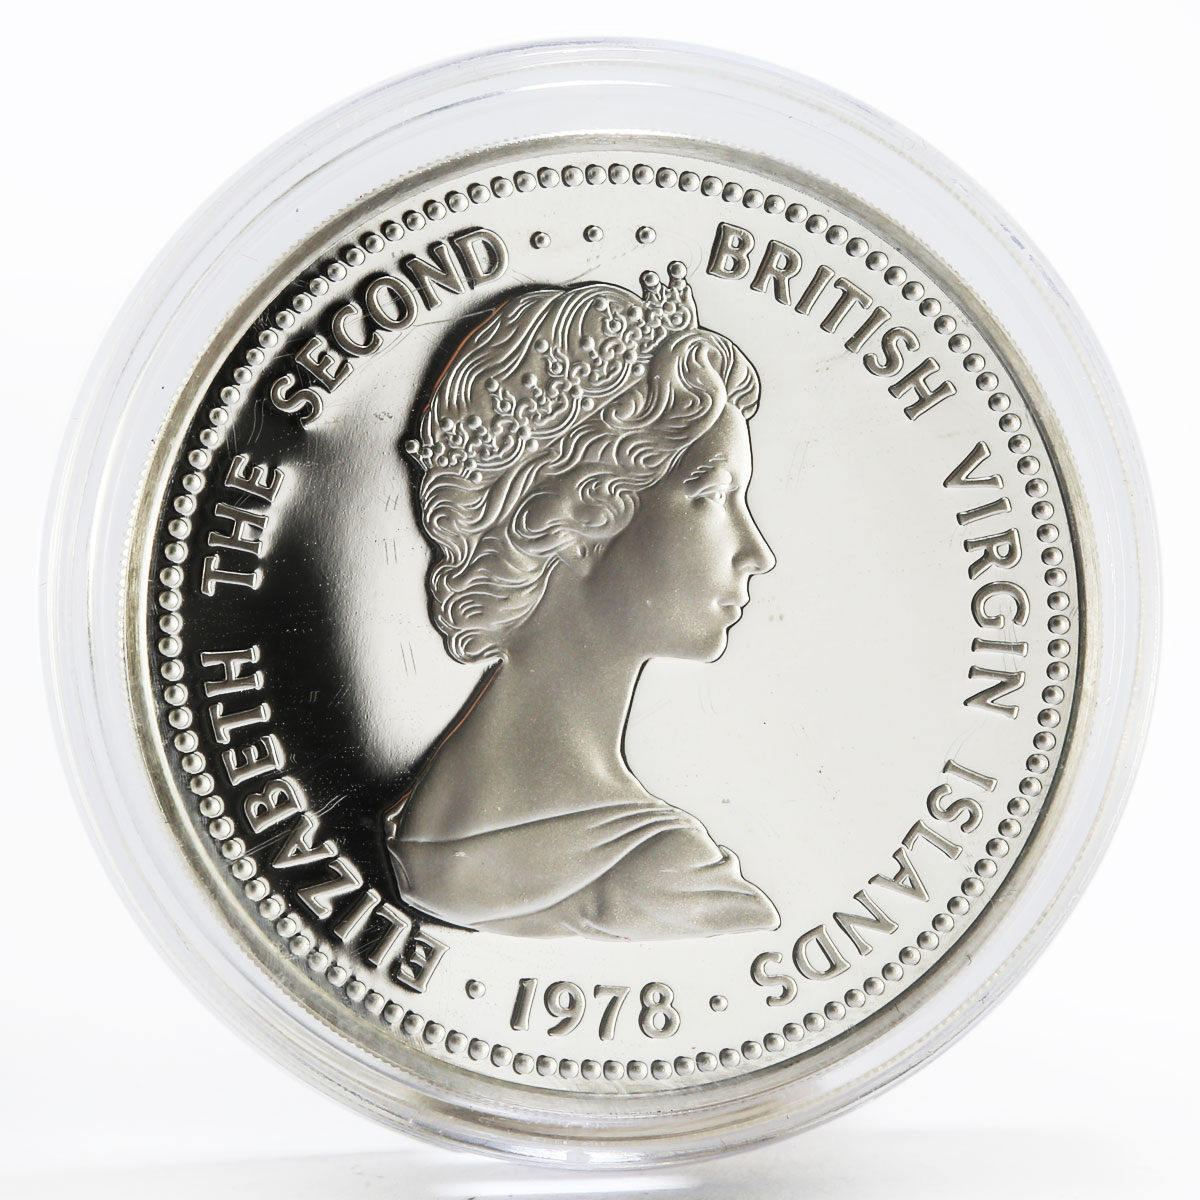 British Virgin Islands 25 dollars Coronation Jubilee silver coin 1978